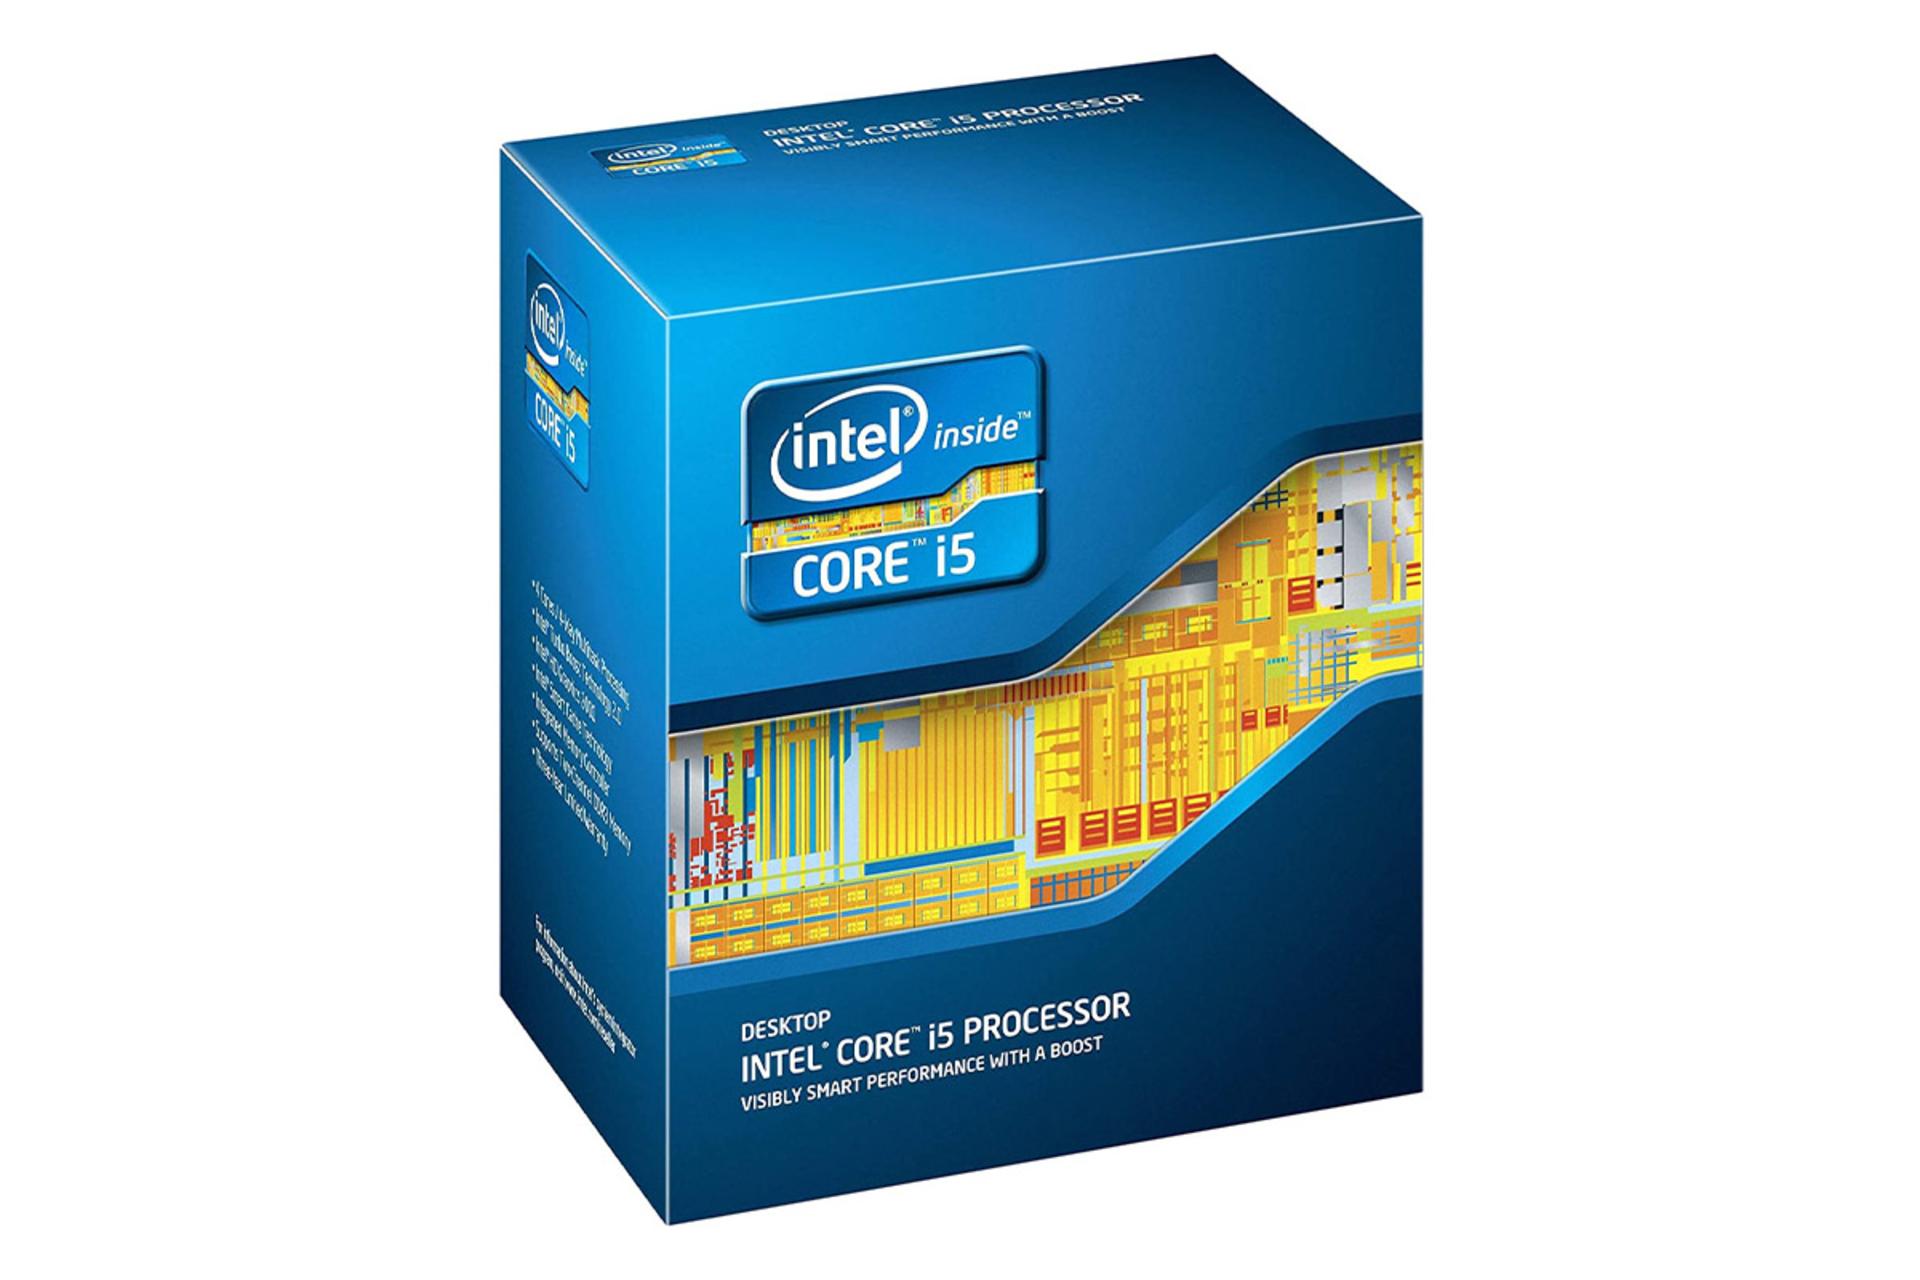 اینتل Core i5-2400S / Intel Core i5-2400S